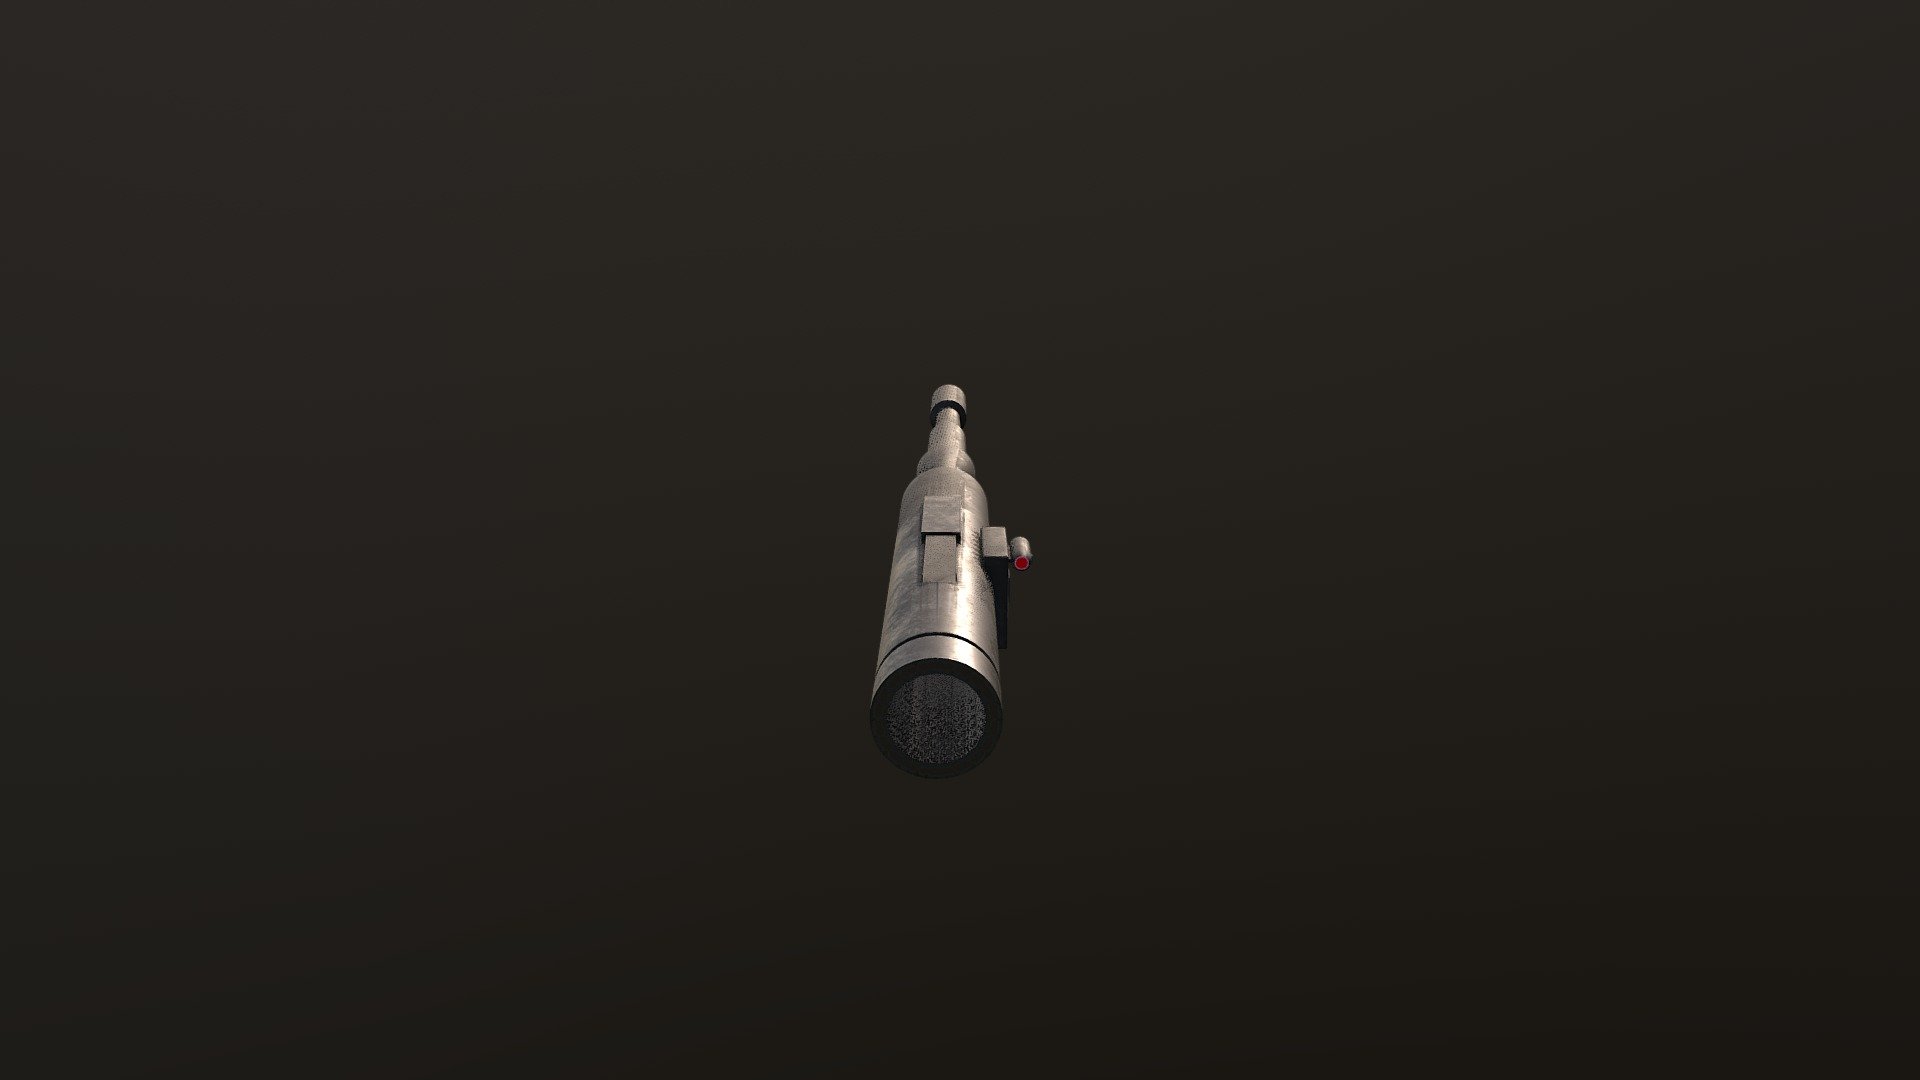 rps 6 rocket launcher